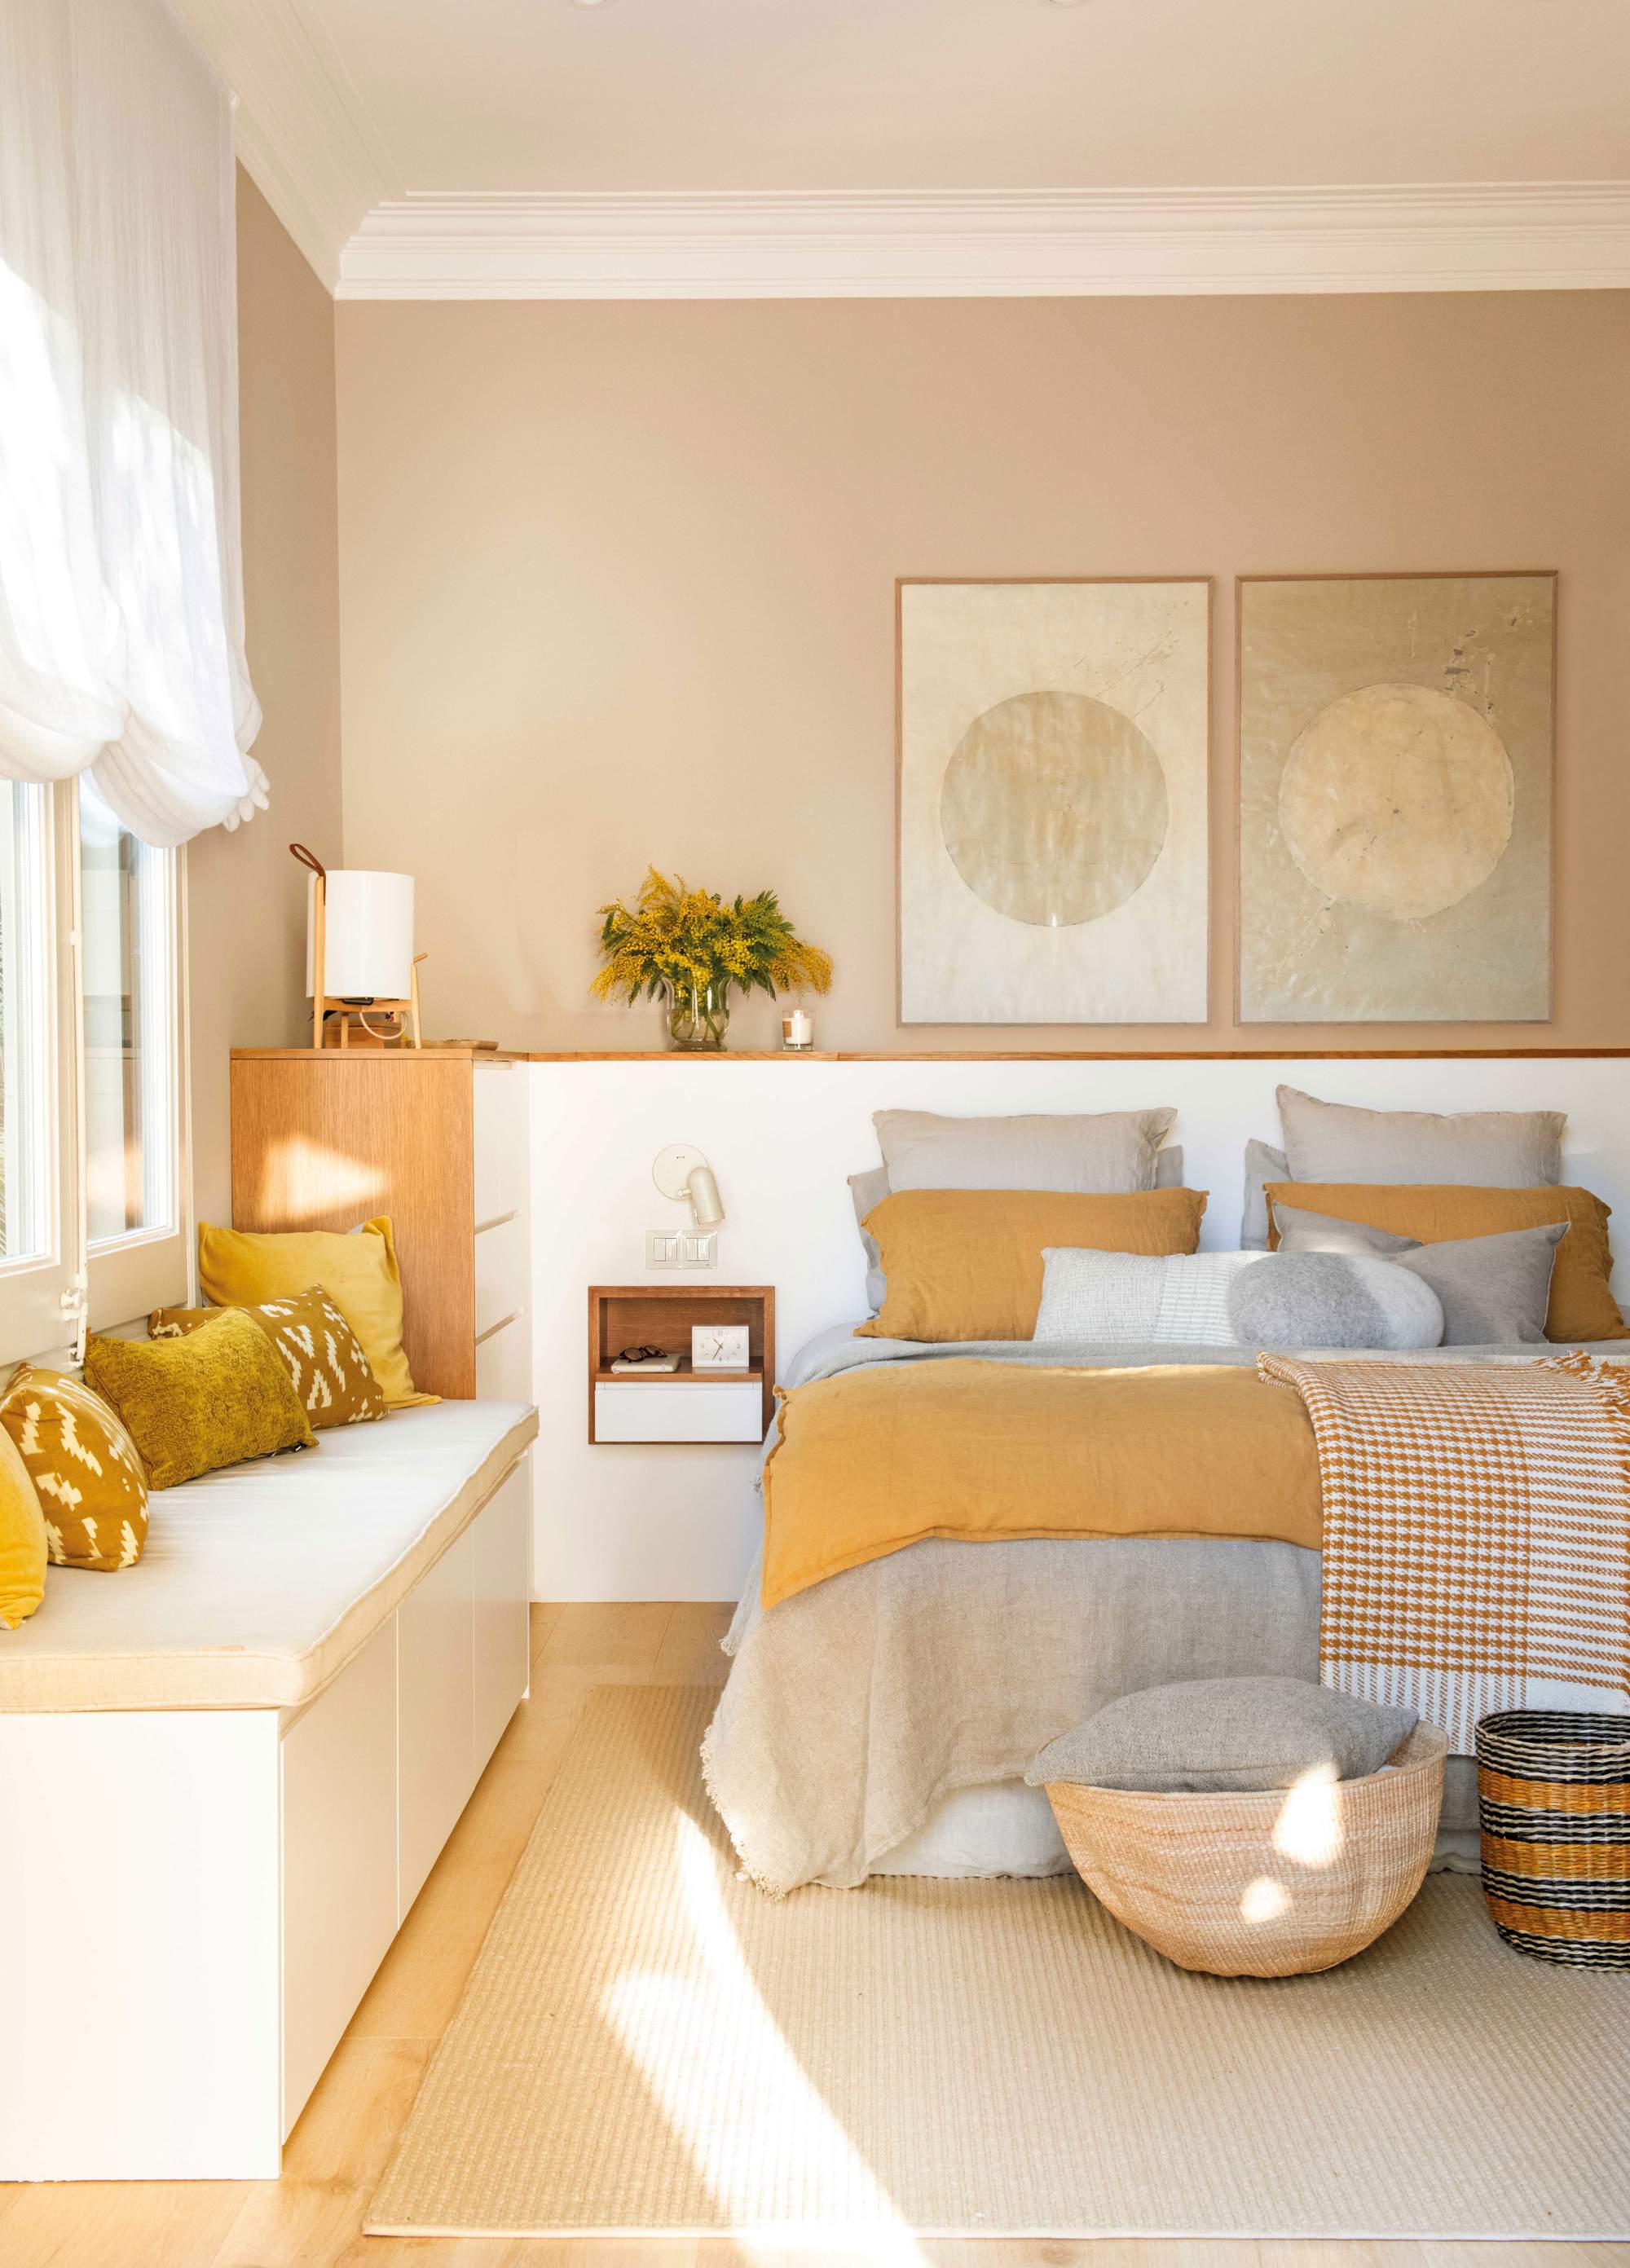 Dormitorio con paredes pintadas en beige, banco y ropa de cama en color mostaza y gris